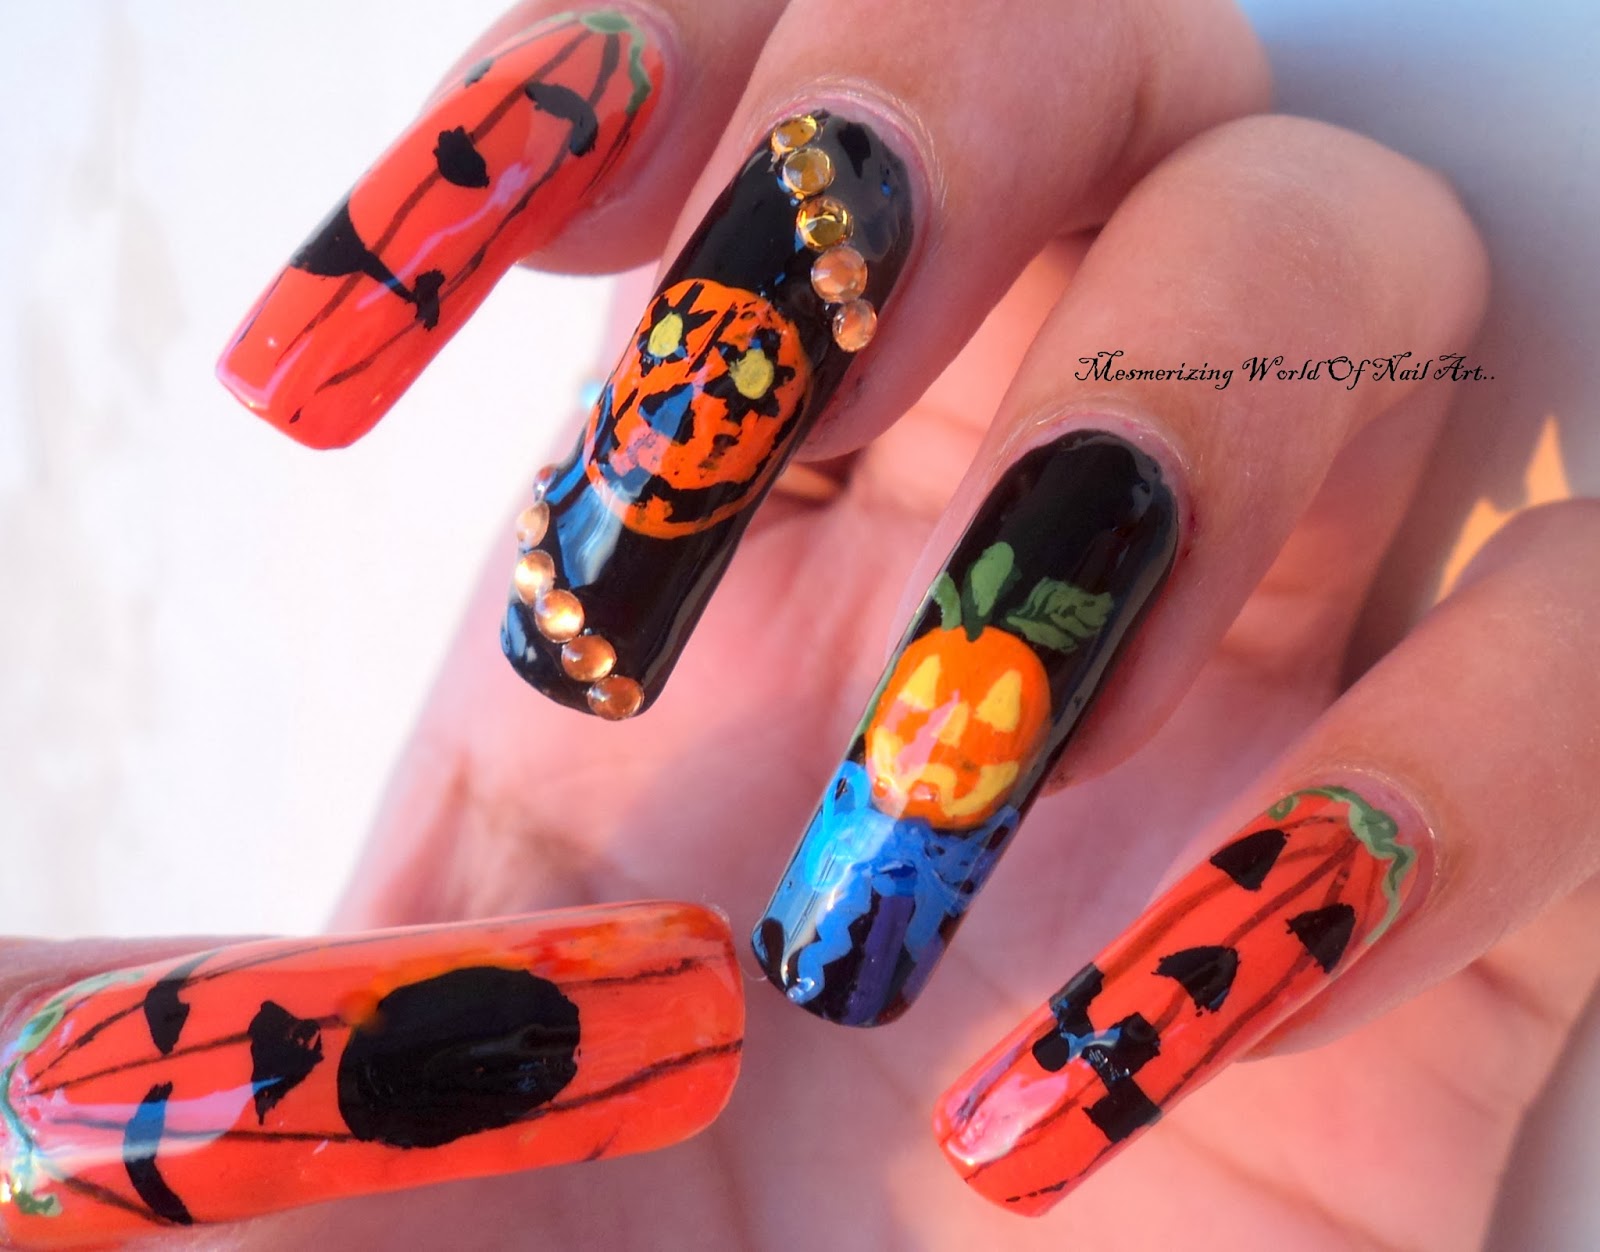 1. Halloween Pumpkin Nail Art Tutorial - wide 4